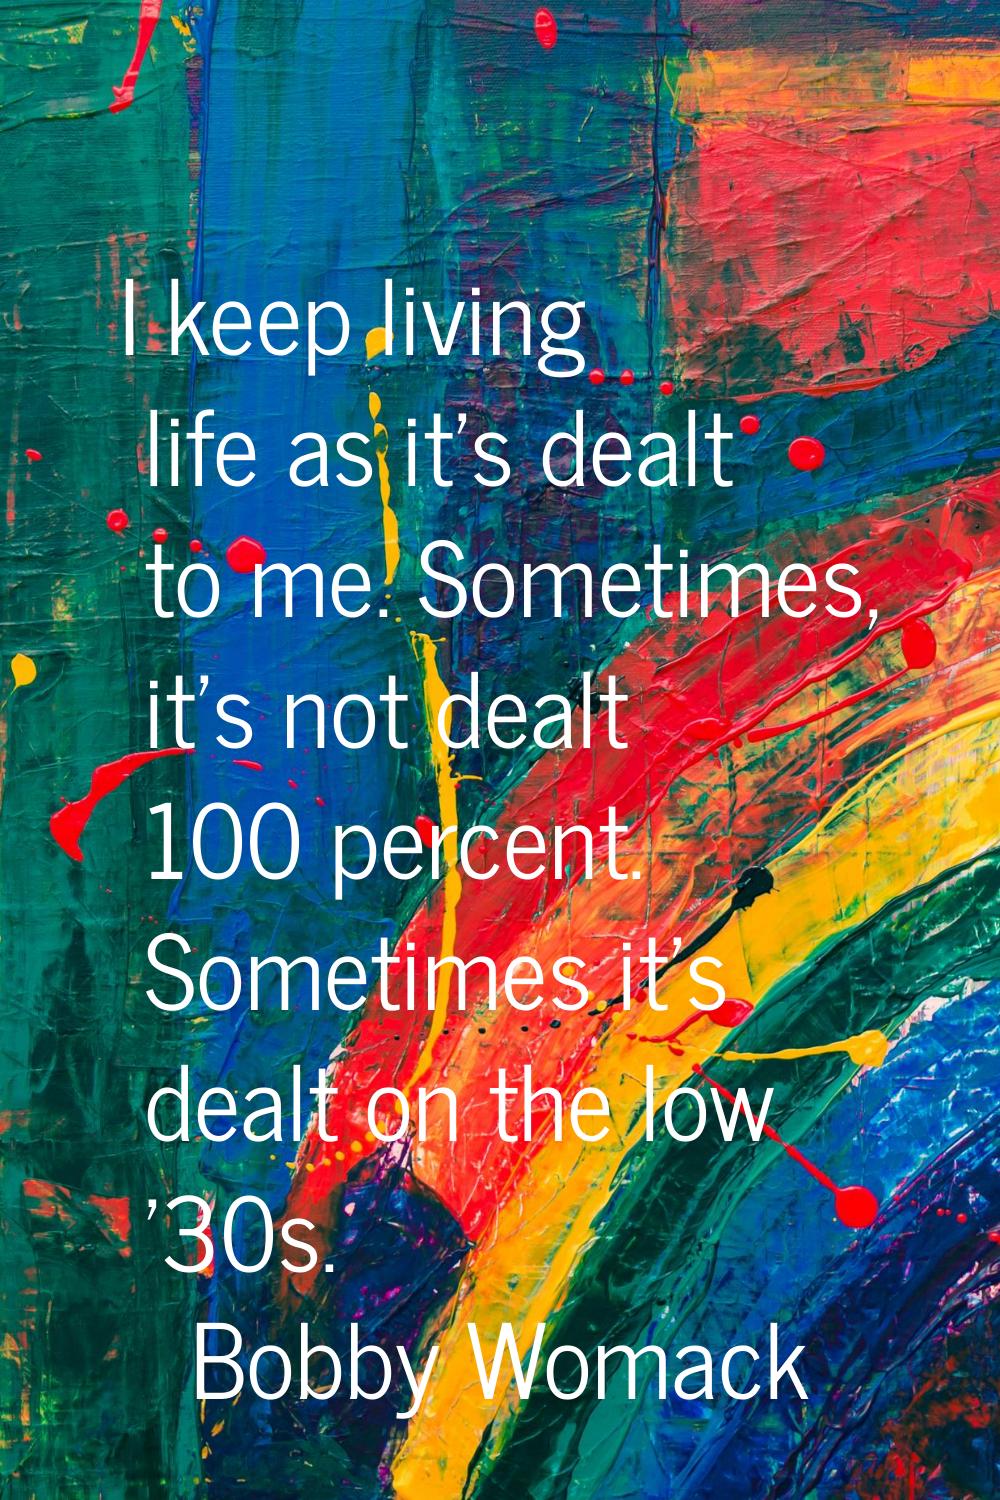 I keep living life as it's dealt to me. Sometimes, it's not dealt 100 percent. Sometimes it's dealt